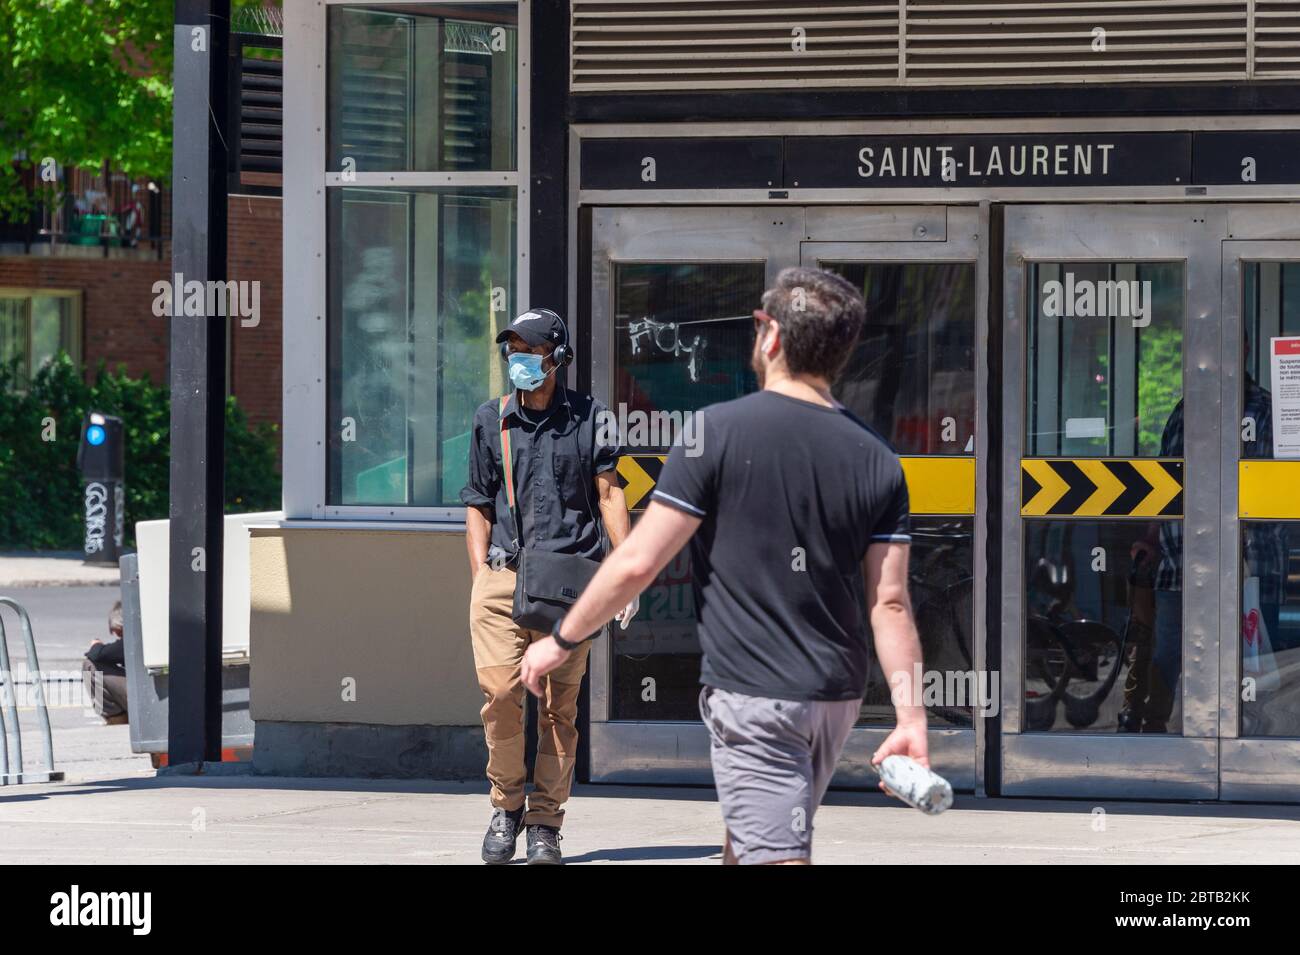 Montréal, CA - 23 mai 2020: Homme avec masque pour la protection contre COVID-19 sortant de la station de métro Saint Laurent Banque D'Images